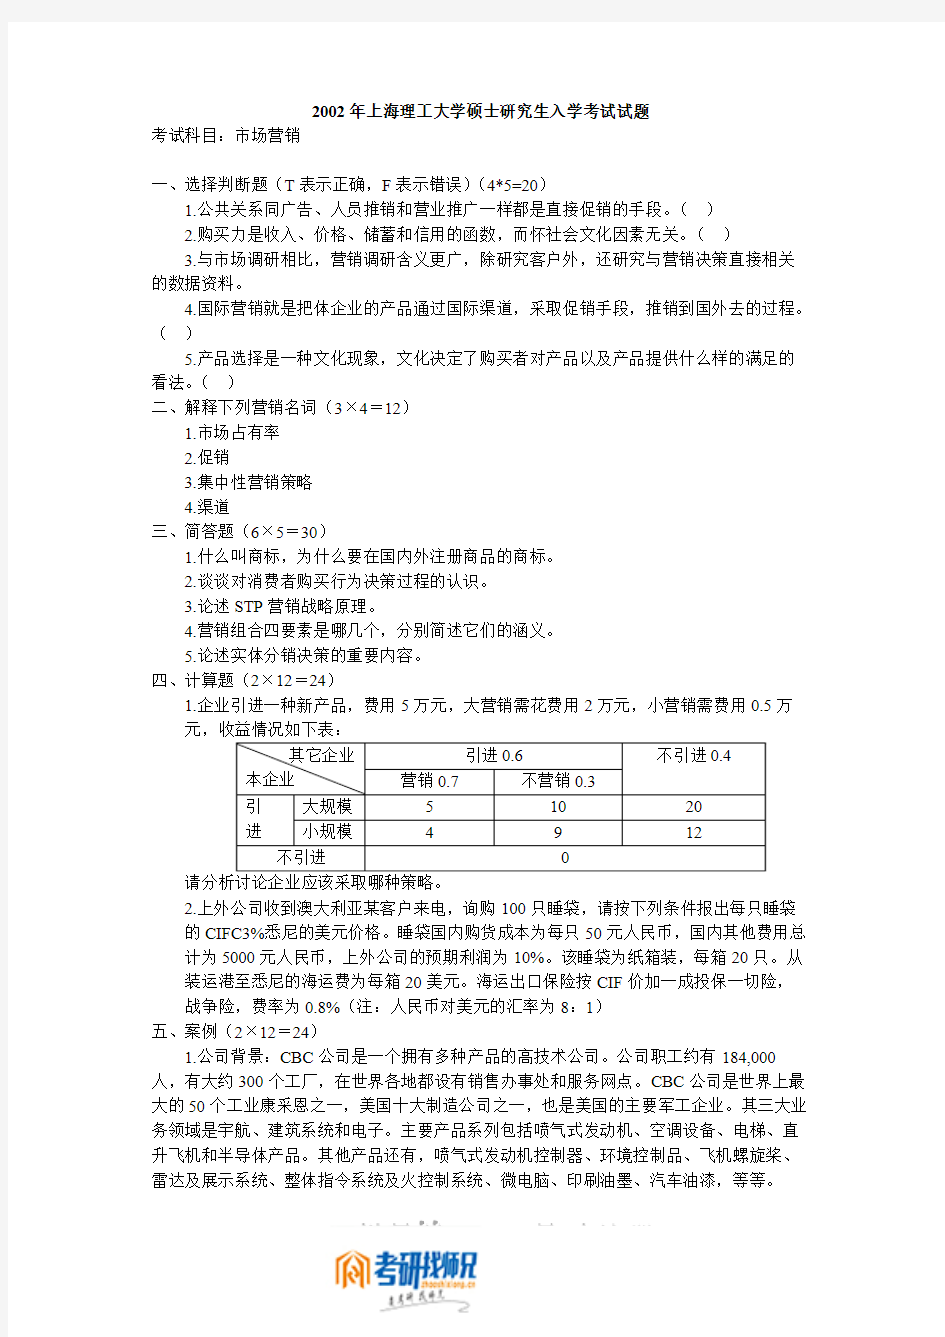 上海交通大学研究生入学考试市场营销2002